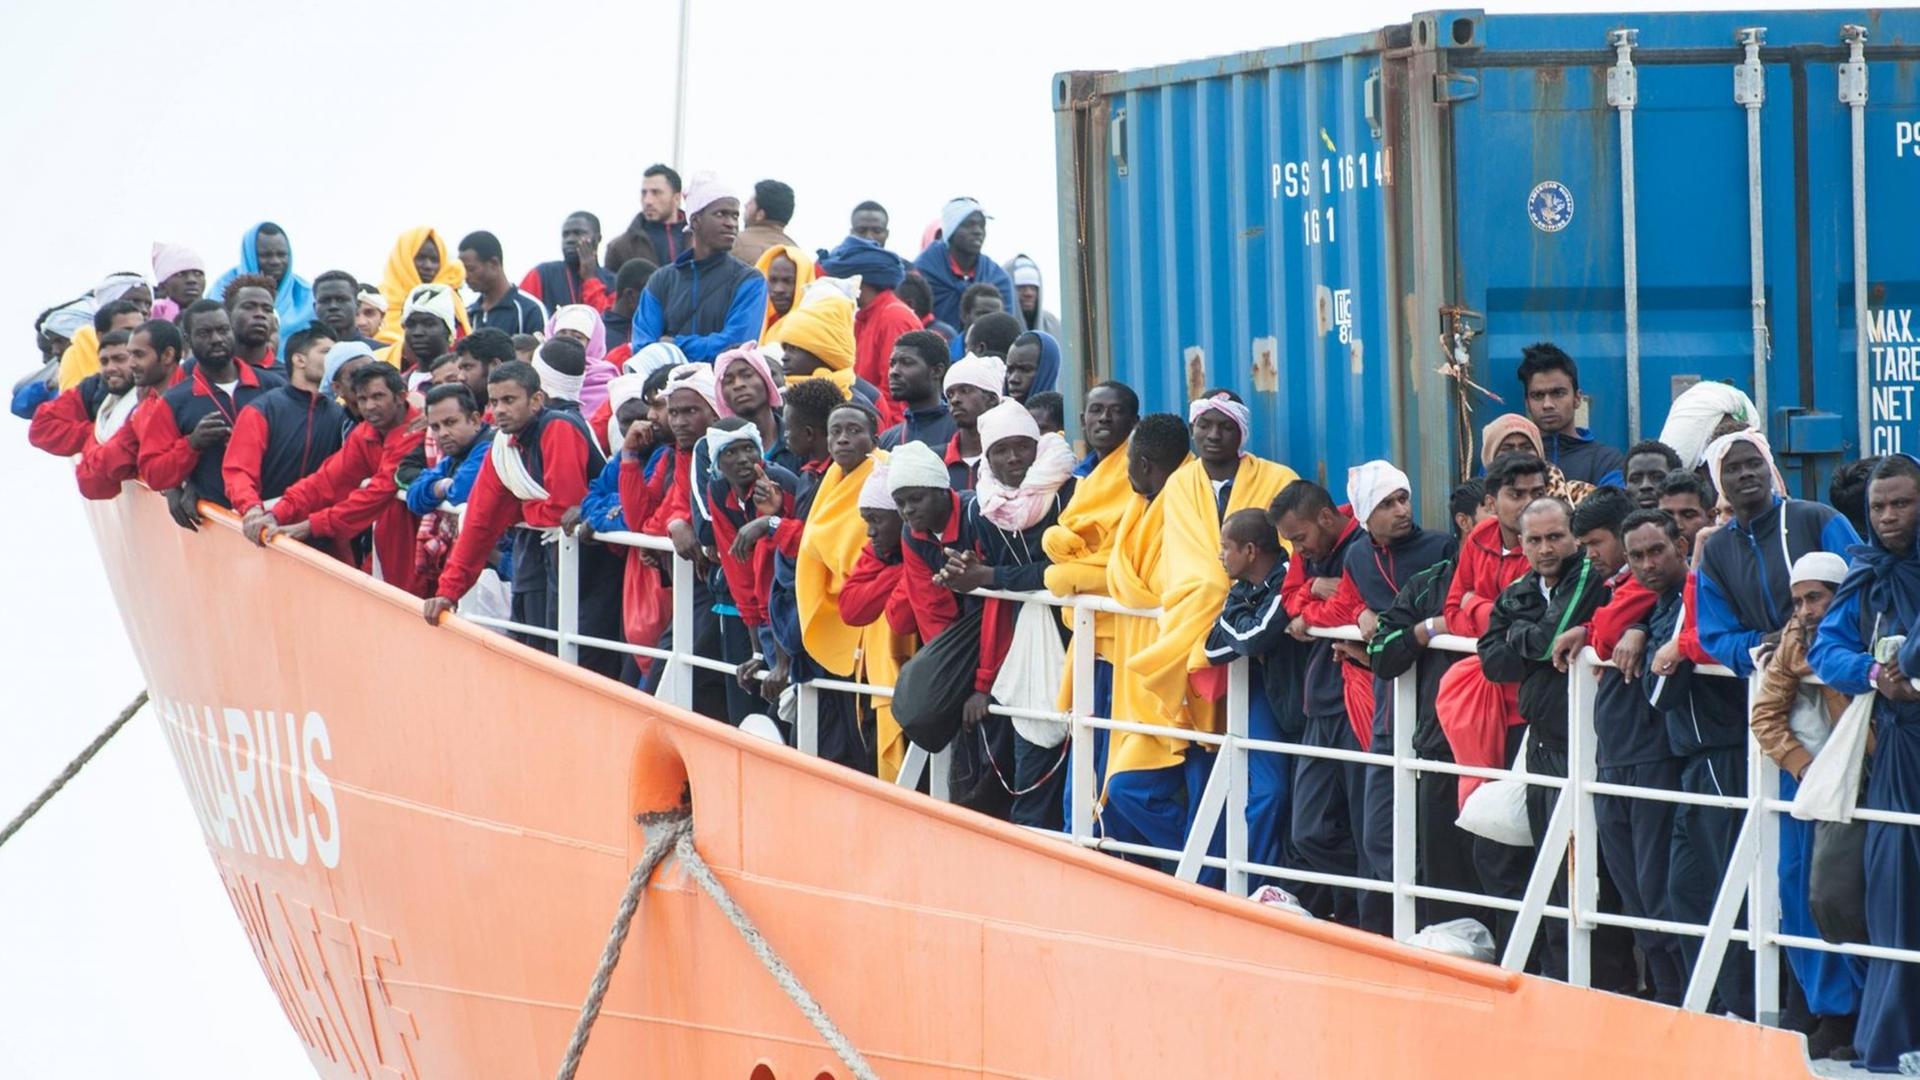 Flüchtlinge stehen an der Reeling eines Rettungsschiffs. 